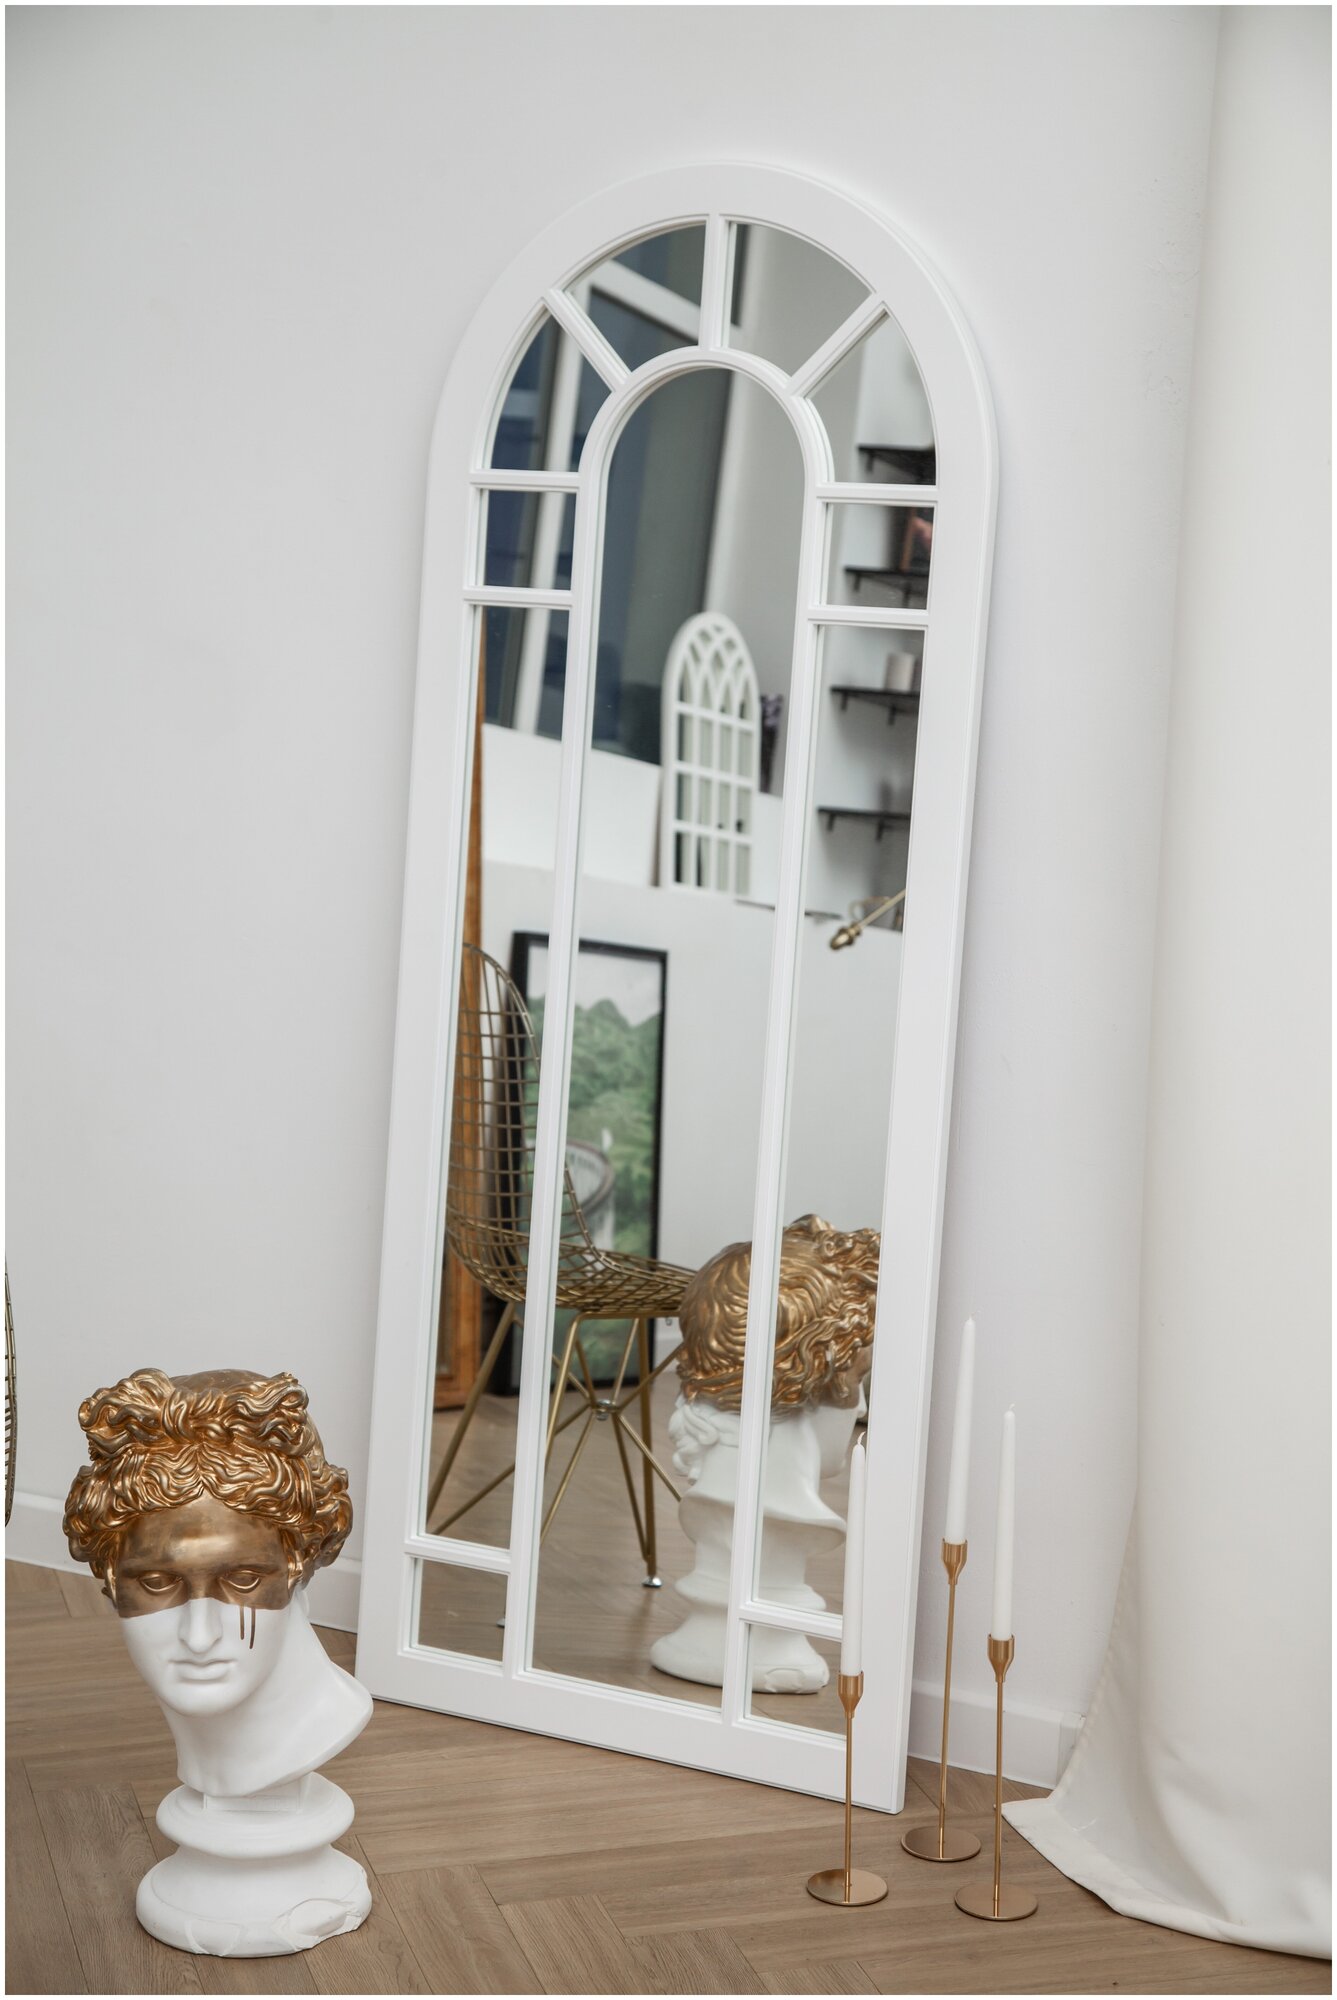 Зеркало арочное декоративное (фальш окно) настенное / напольное 70х170 см